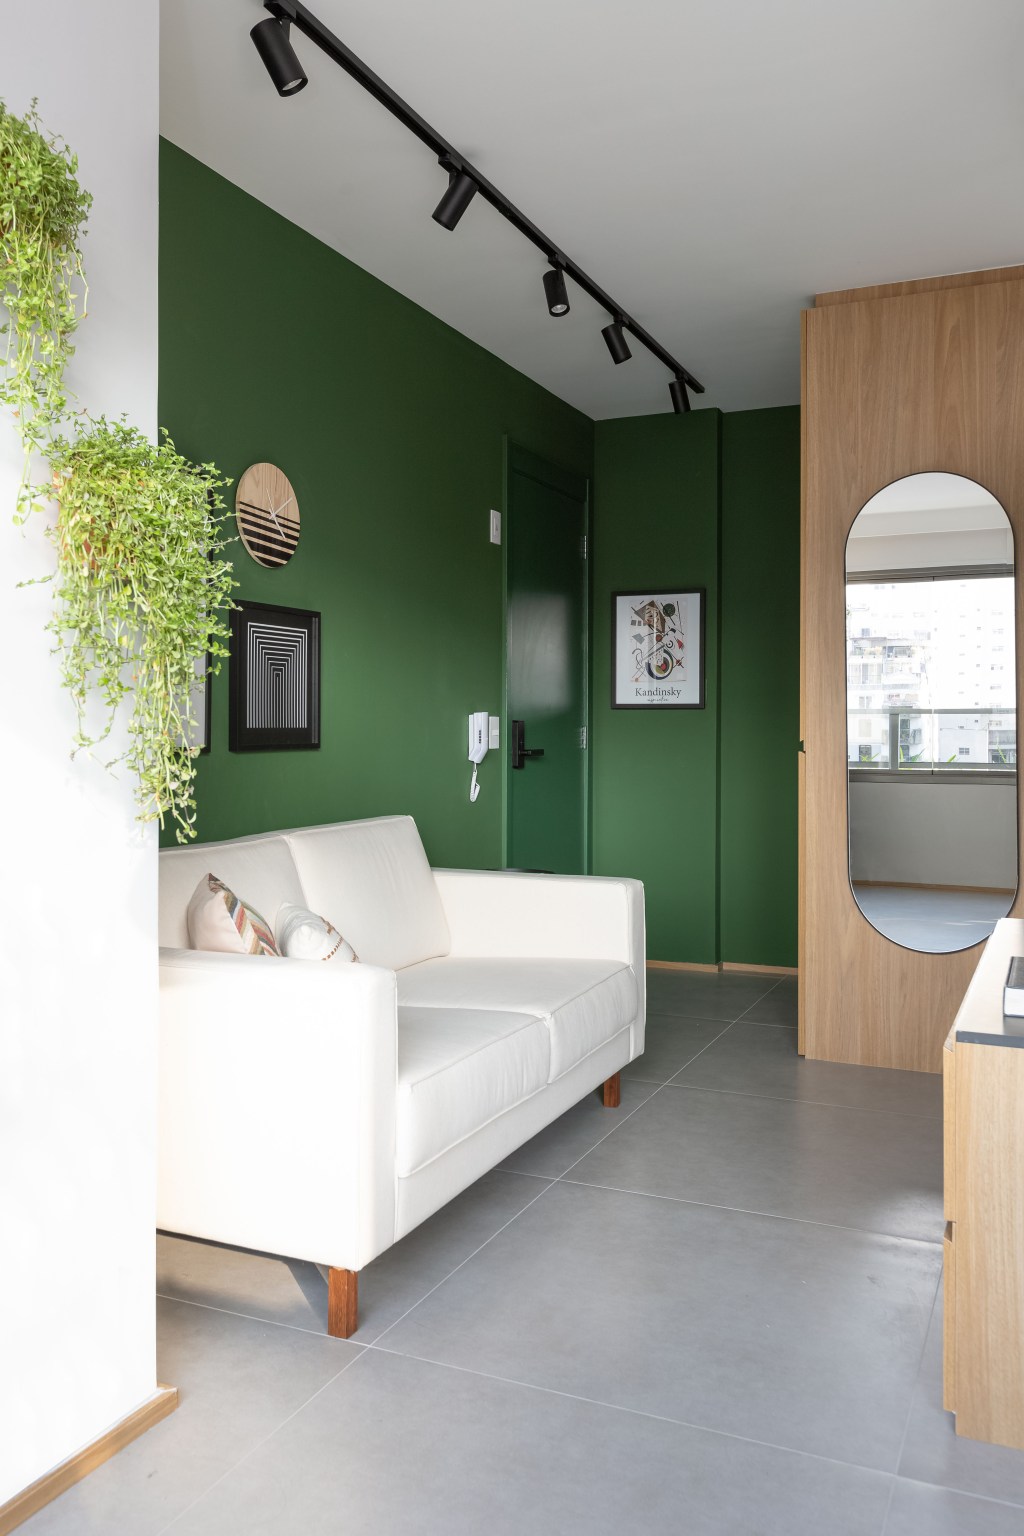 Apê de 25 m² ganha projeto jovem, integrado e funcional. Projeto de Carolina Gava, Na foto, sala com parede verde e espelho.